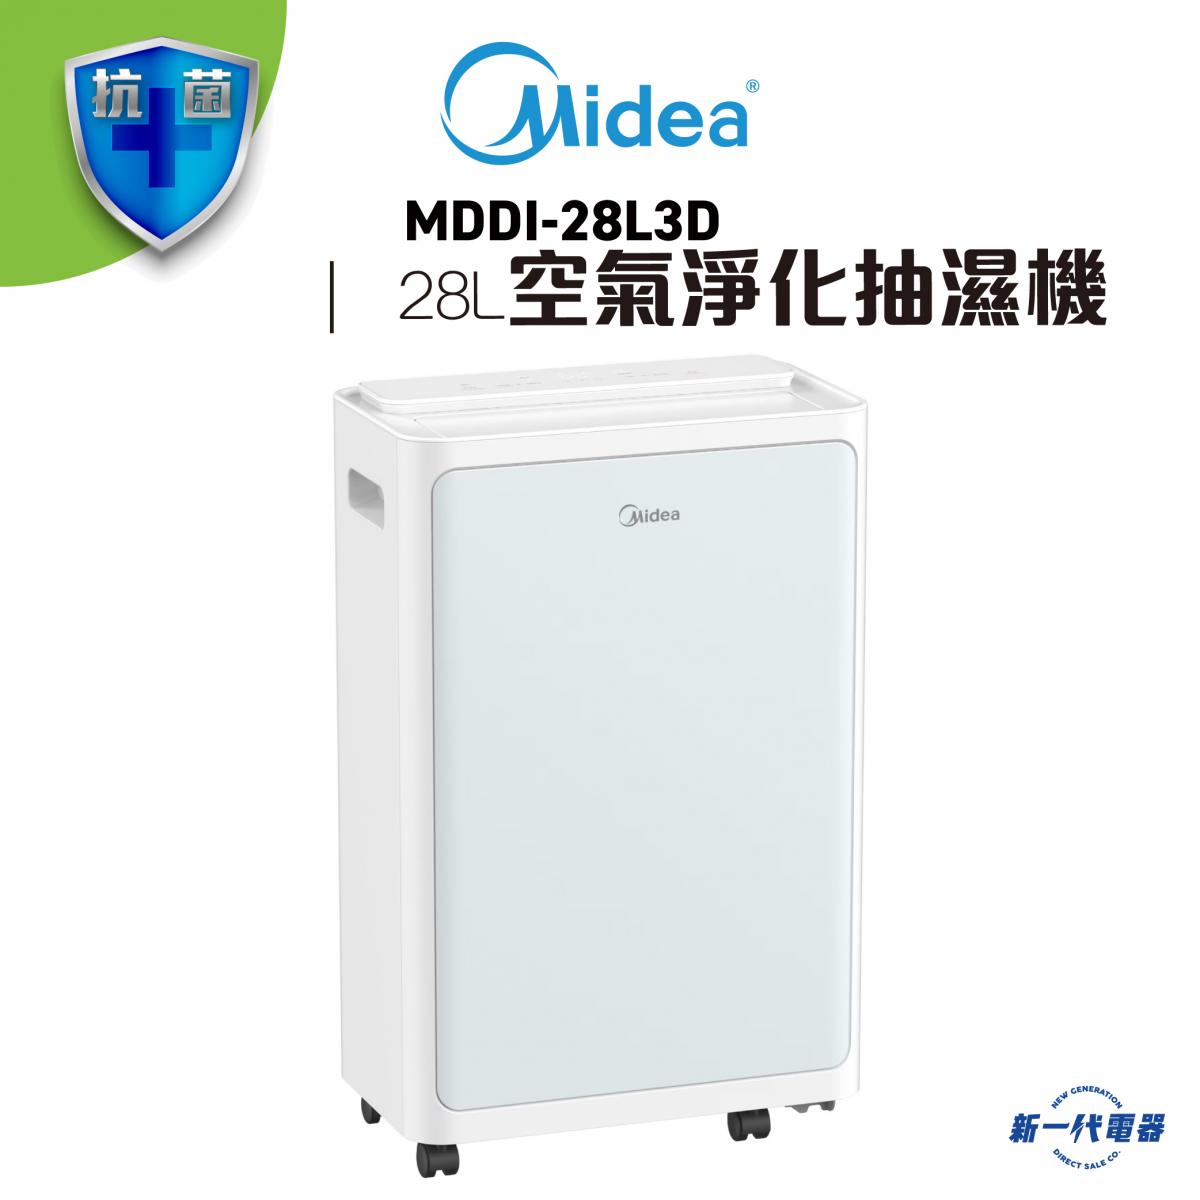 MDDI28L3D  -2-in-1 Air Purifying Dehumidifier (MDDI-28L3D)